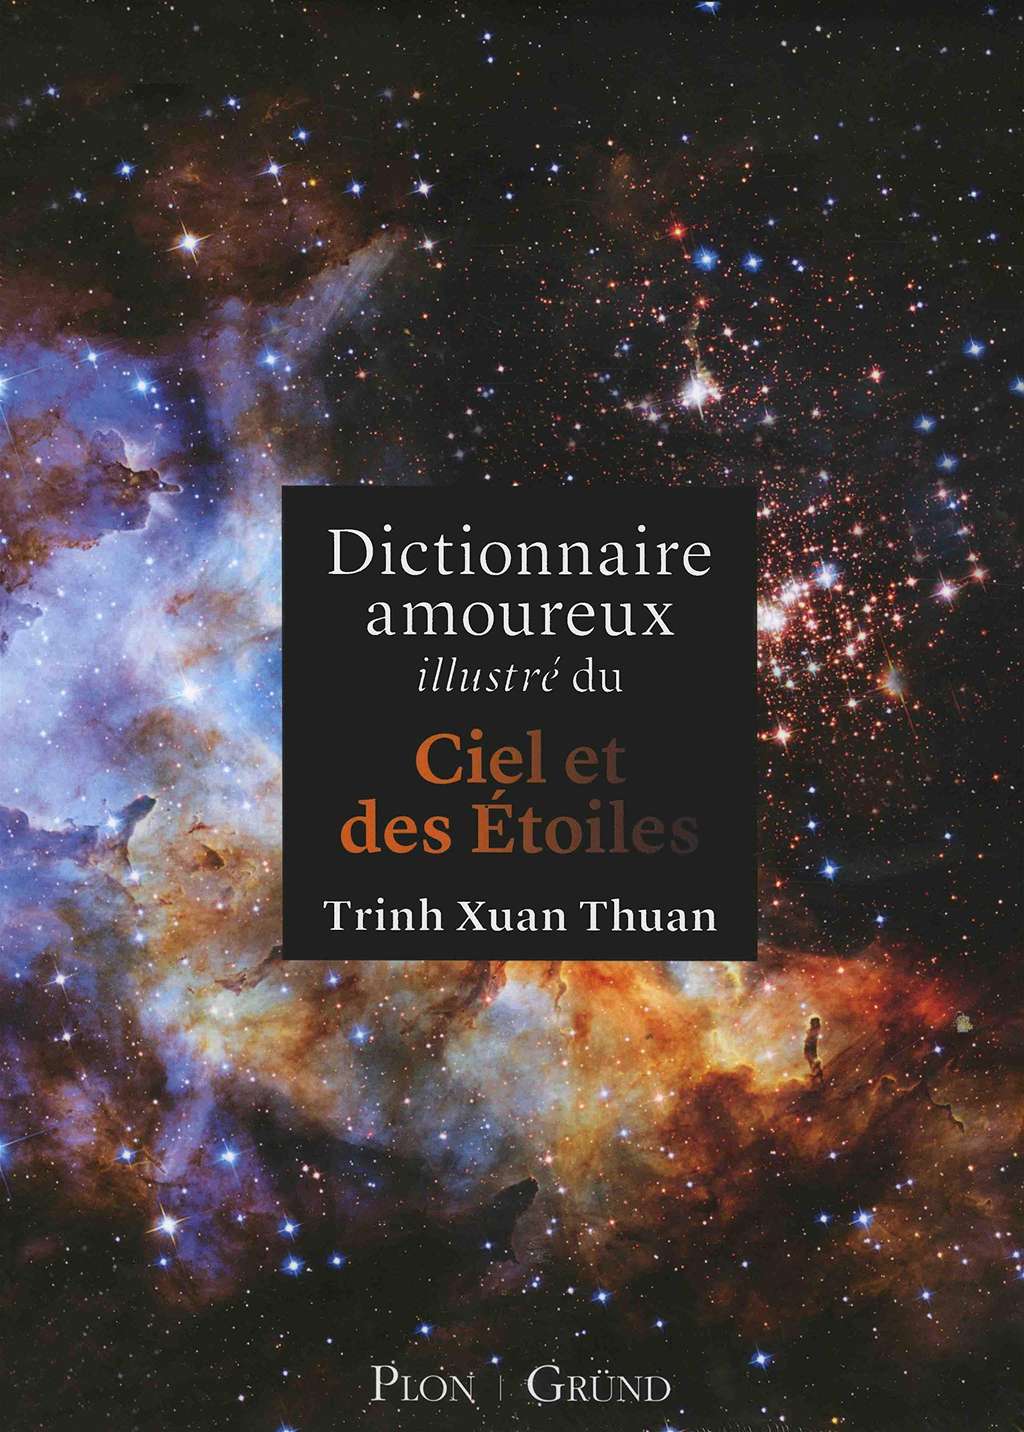 Dictionnaire amoureux illustré du ciel et des étoiles : 29,90 euros chez Amazon